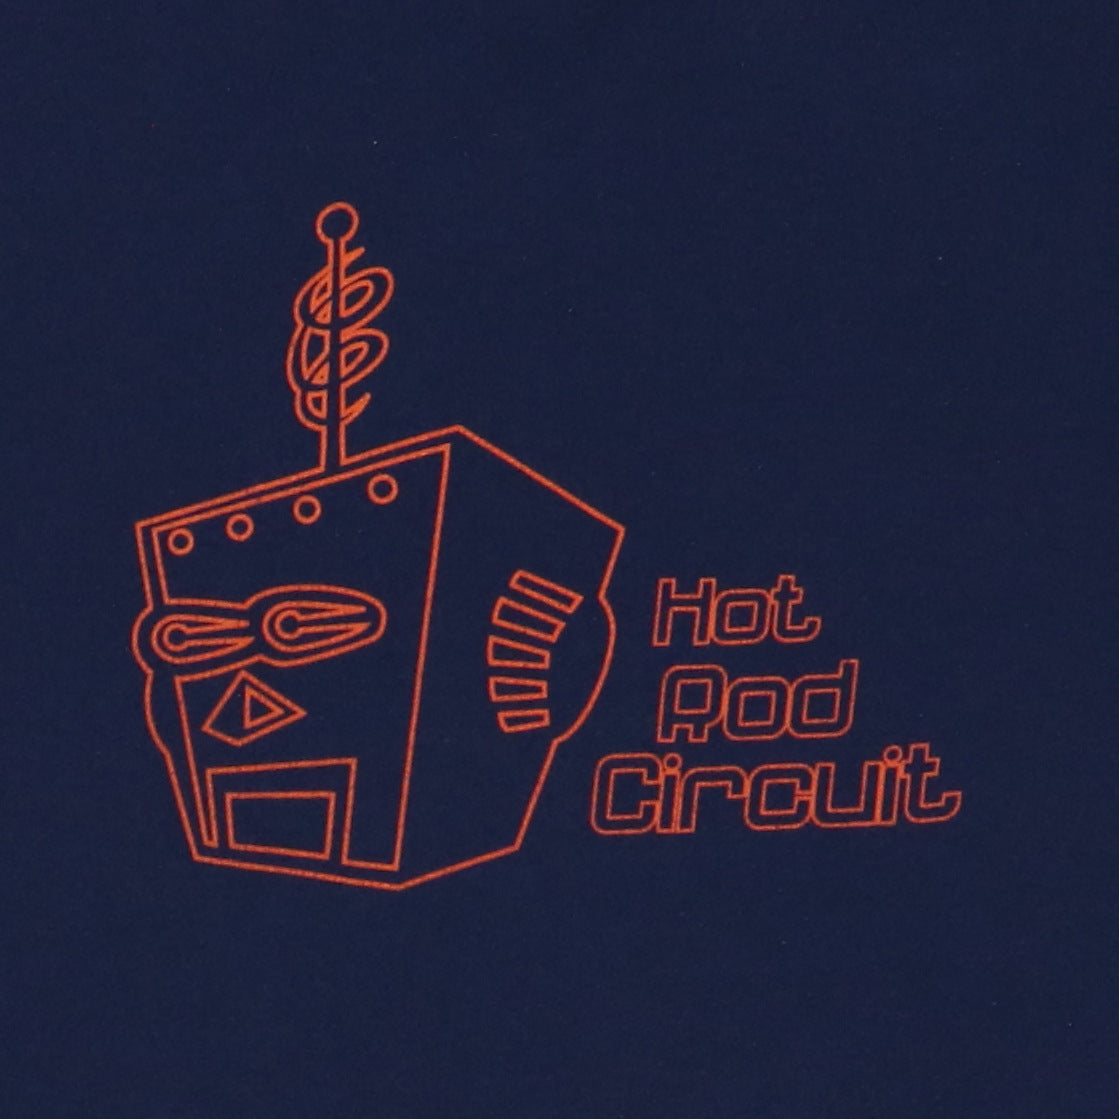 2002 Hot Rod Circuit Shirt